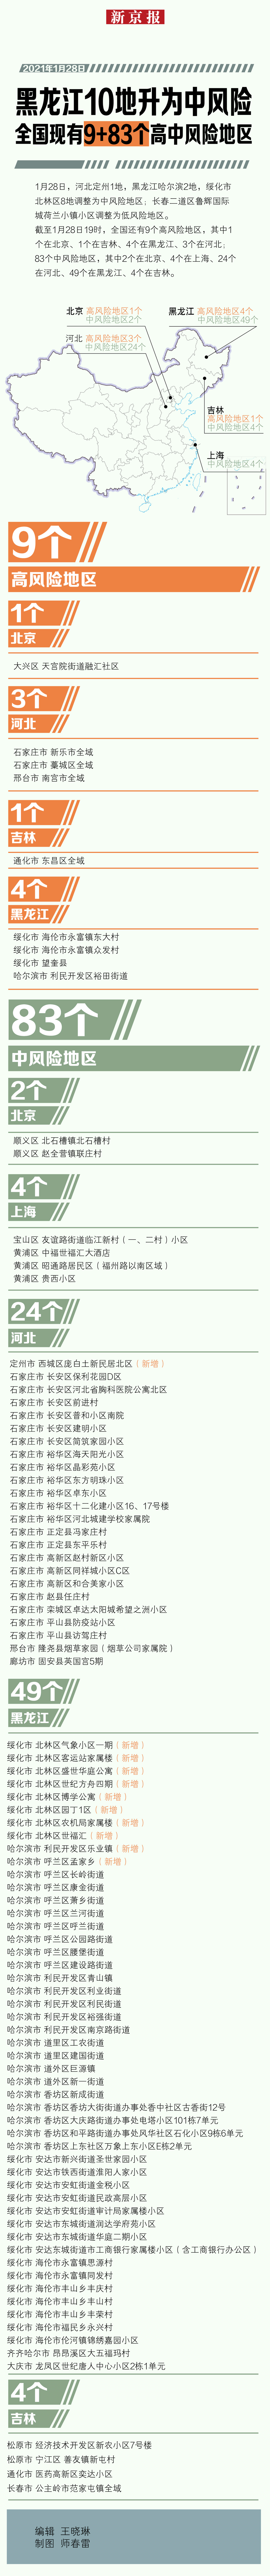 黑龙江10地升为中风险 全国现有9+83个高中风险地区